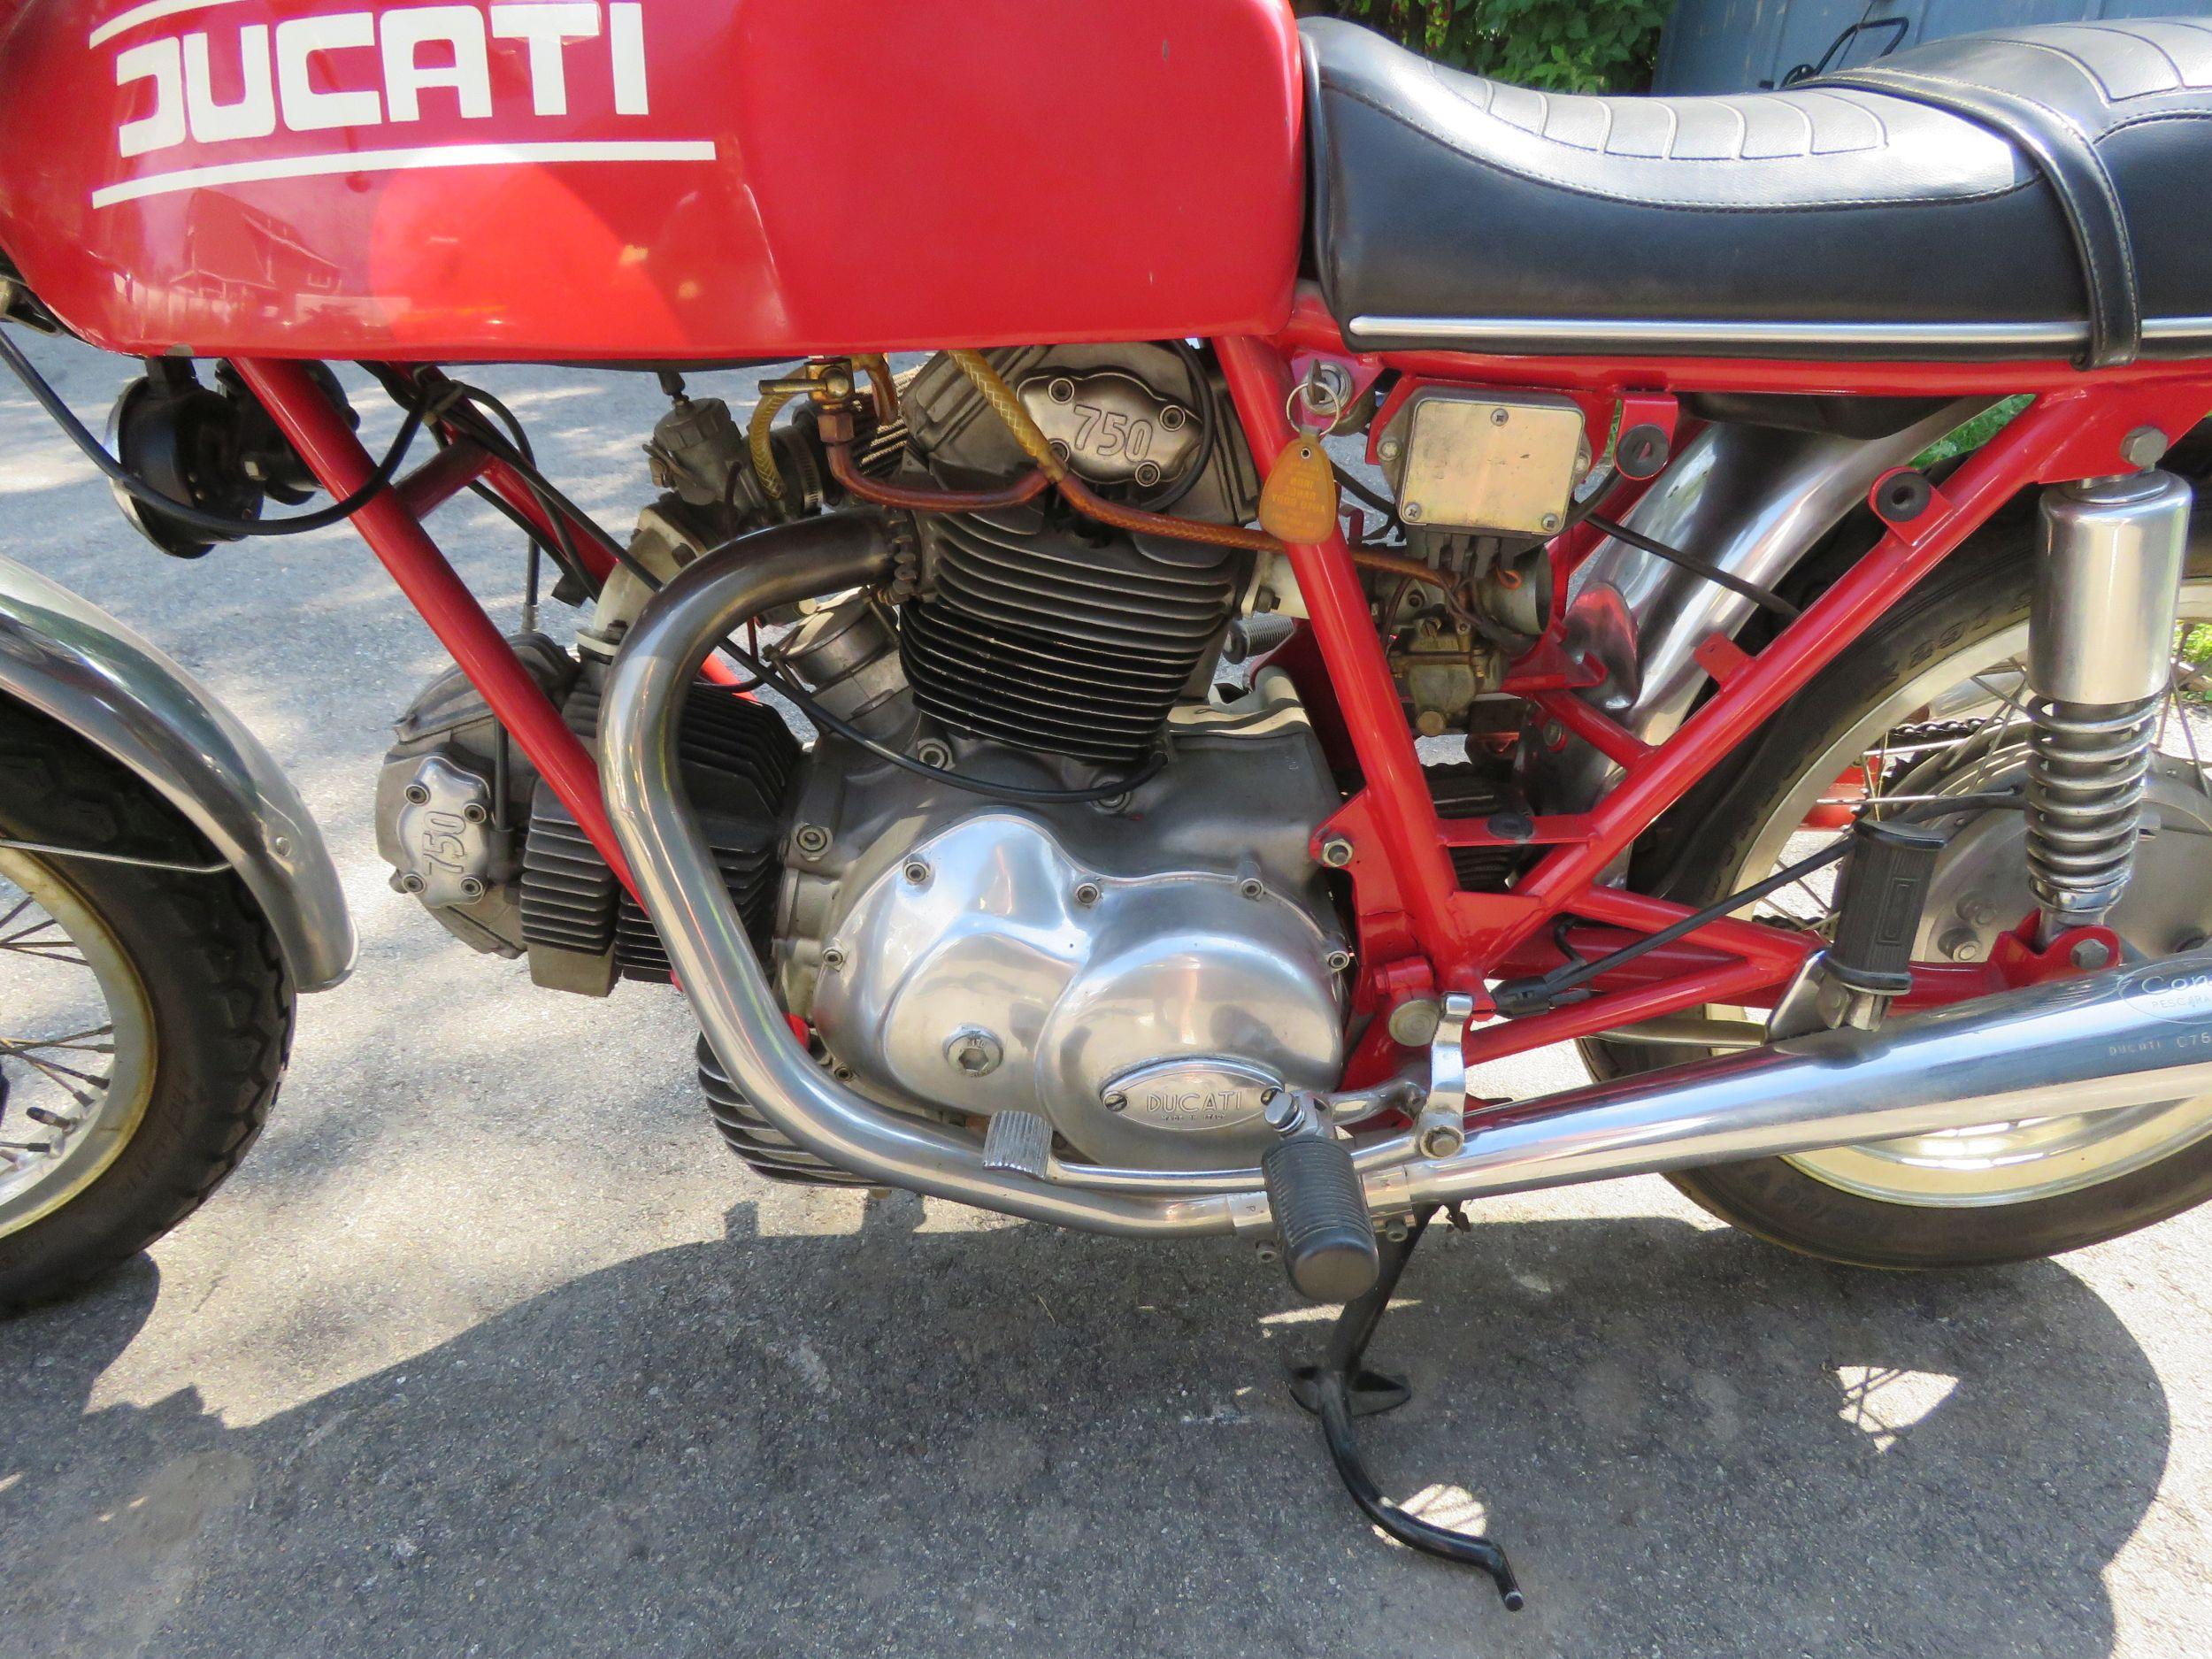 1974 Ducati Marzoochi Motorcycle